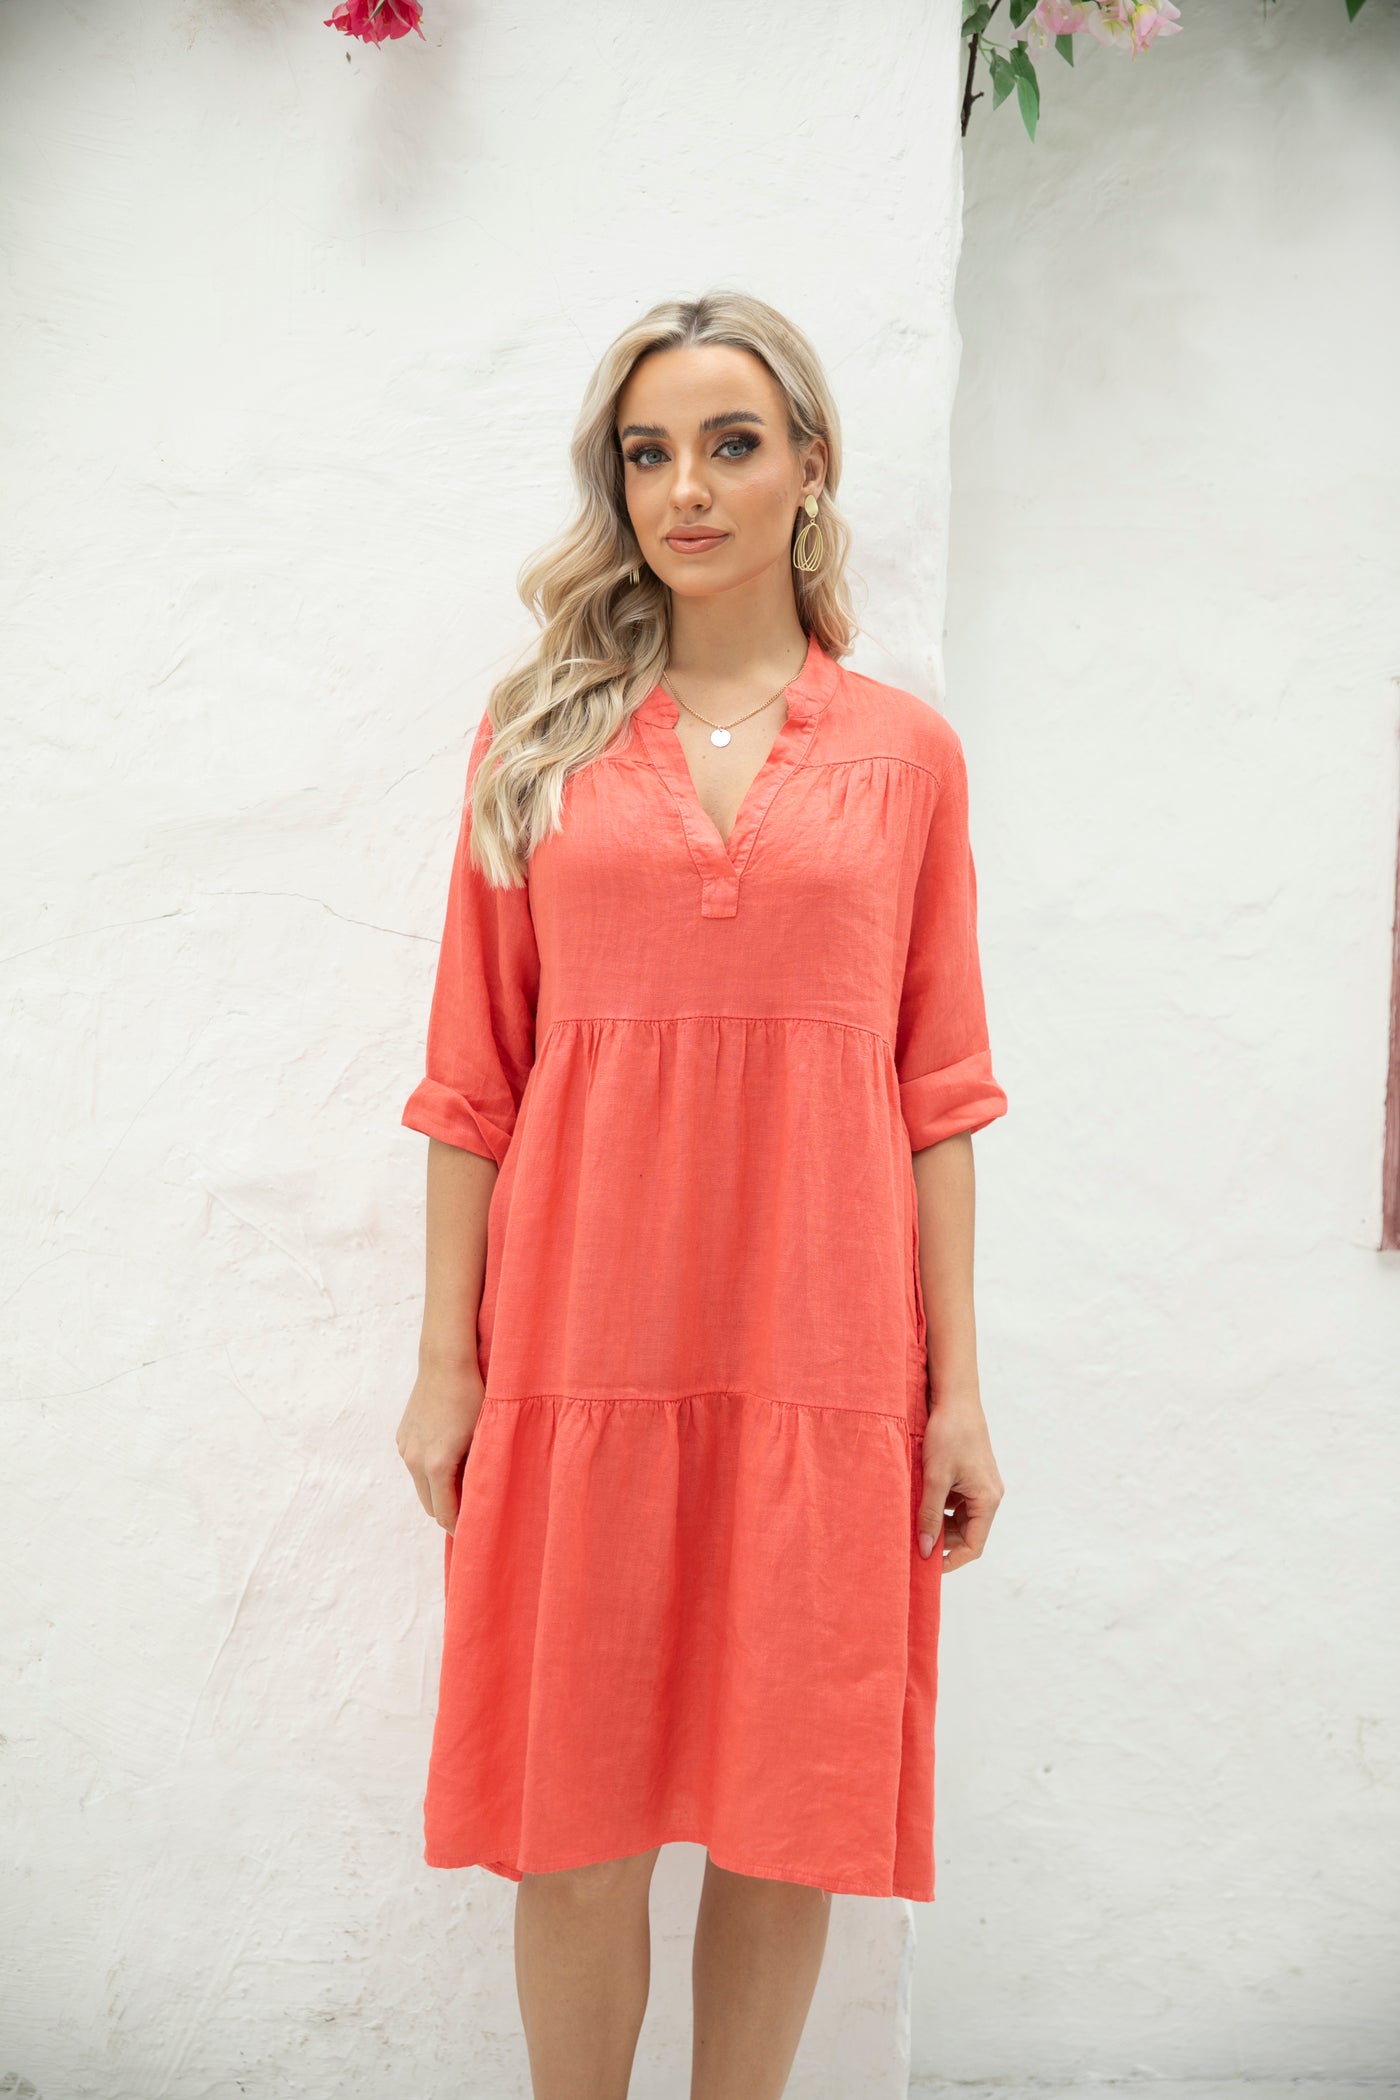 Gabriella's Italian Roll-up sleeve Dress